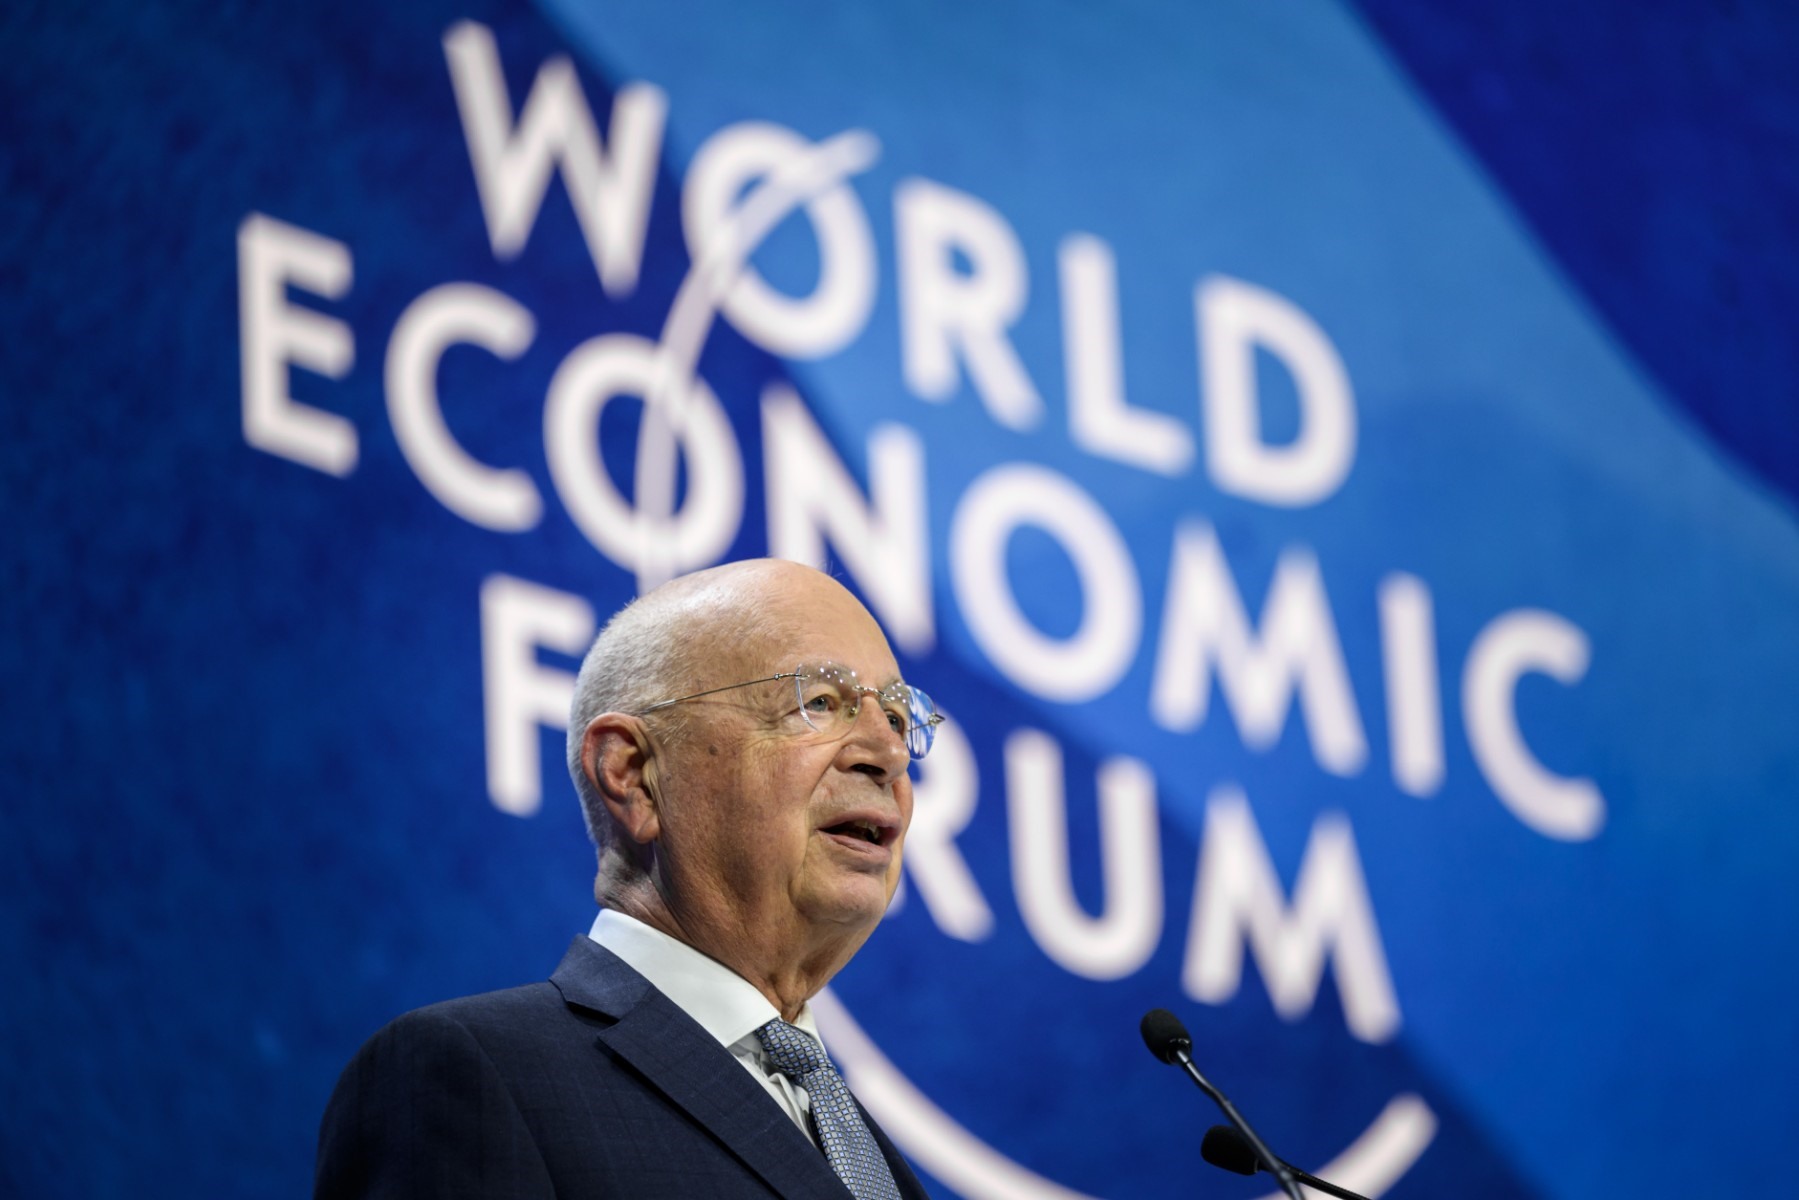 Phó Thủ tướng Trần Hồng Hà tham dự hội nghị thường niên Diễn đàn Kinh tế Thế giới lần thứ 53 tại Davos, Thụy Sĩ theo lời mời của Giáo sư Klaus Schwab - nhà sáng lập kiêm Chủ tịch điều hành Diễn đàn Kinh tế Thế giới. Ảnh: AFP